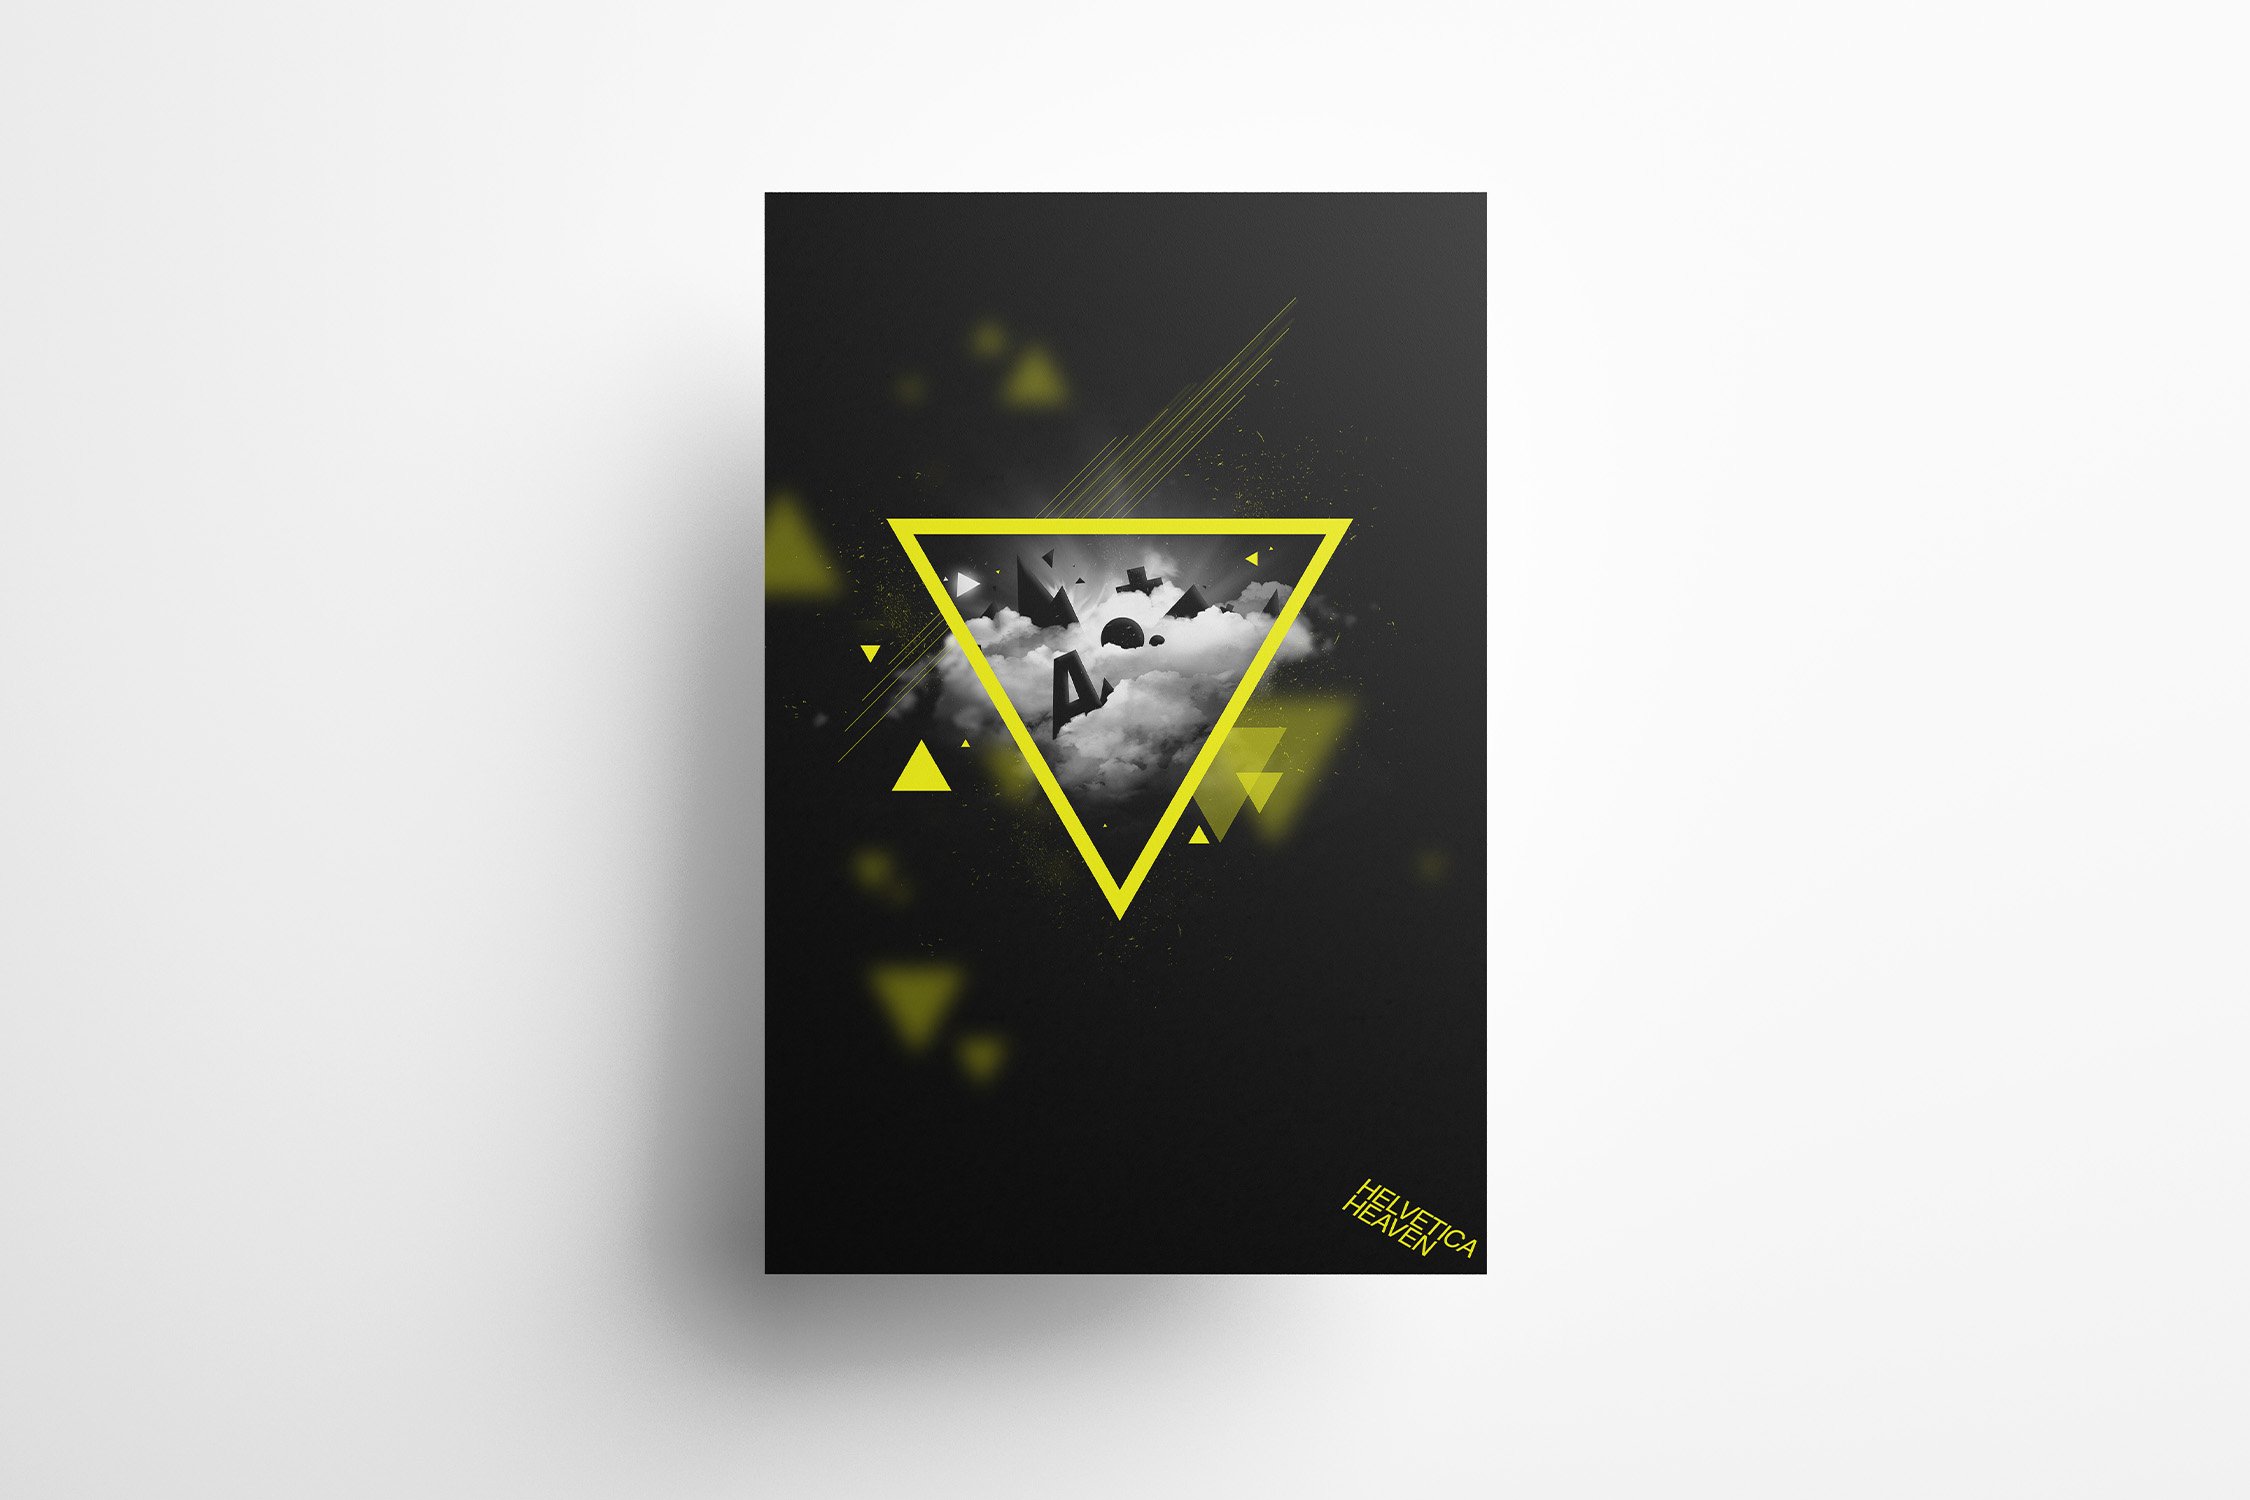 Composing und Illustration Case: Helvetica Heaven mit gelben Dreiecken auf schwarzem Hintergrund